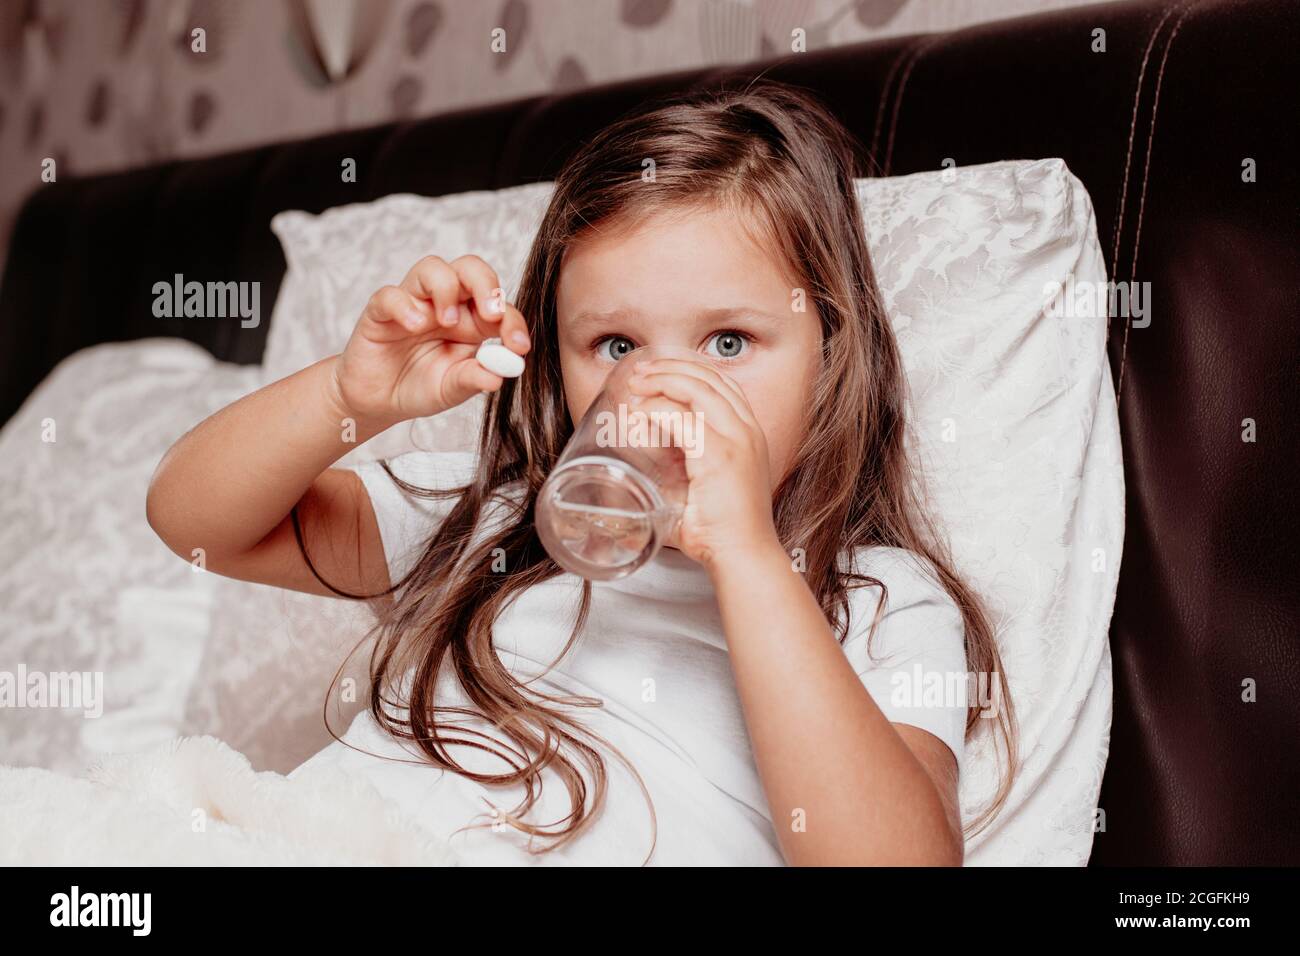 un enfant malade, une fille assise sur un lit avec un coussin blanc, buvant de l'eau d'un verre et tenant une pilule blanche à la main Banque D'Images